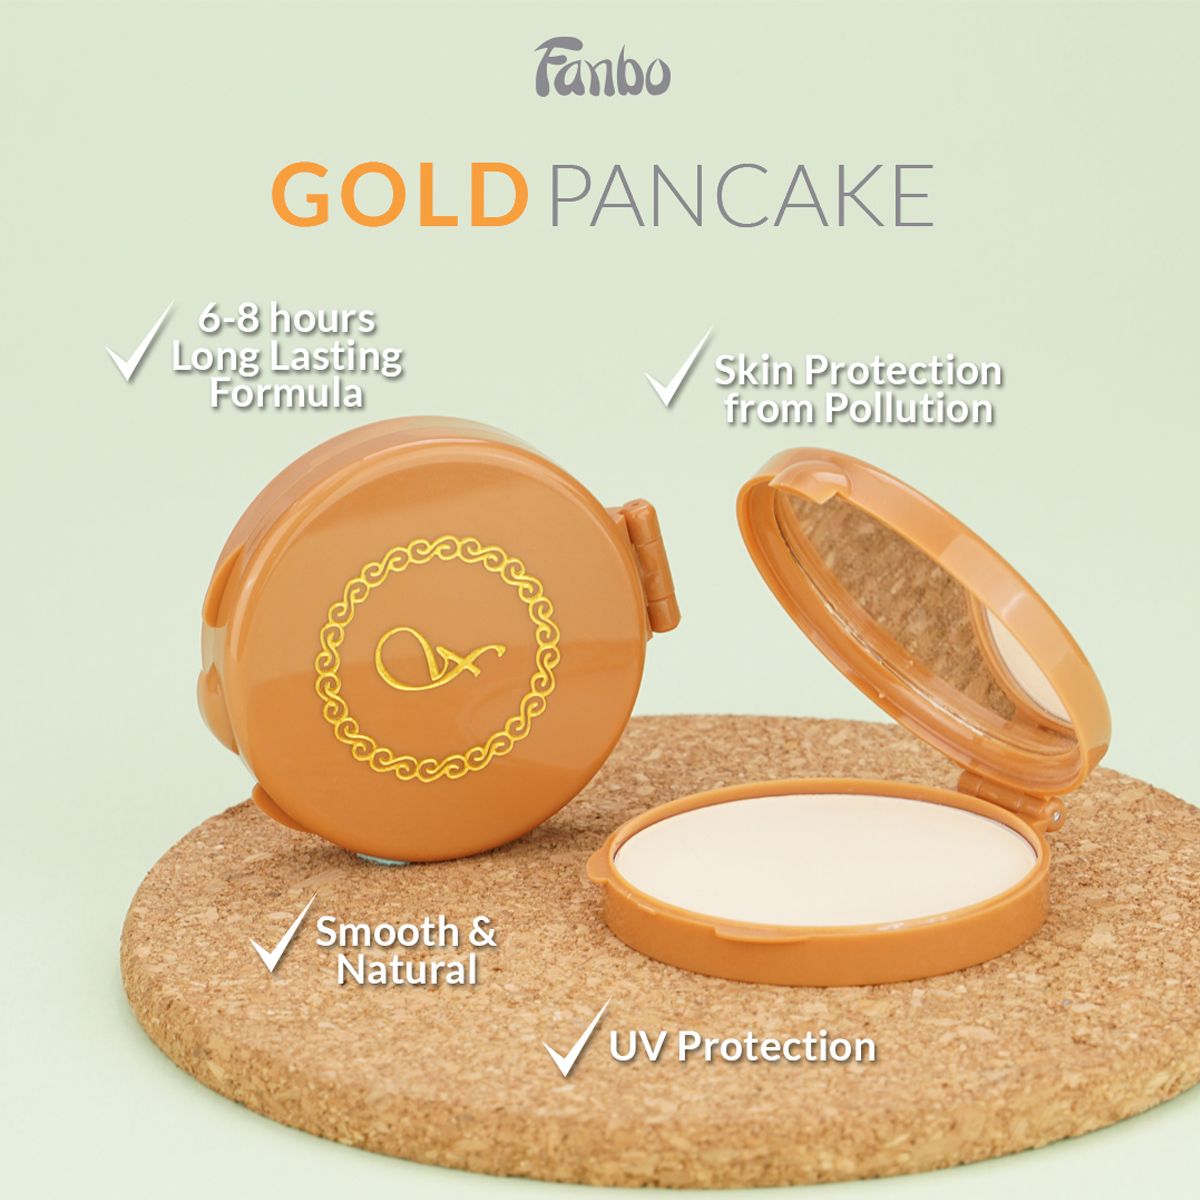 Fanbo Gold Pancake powder